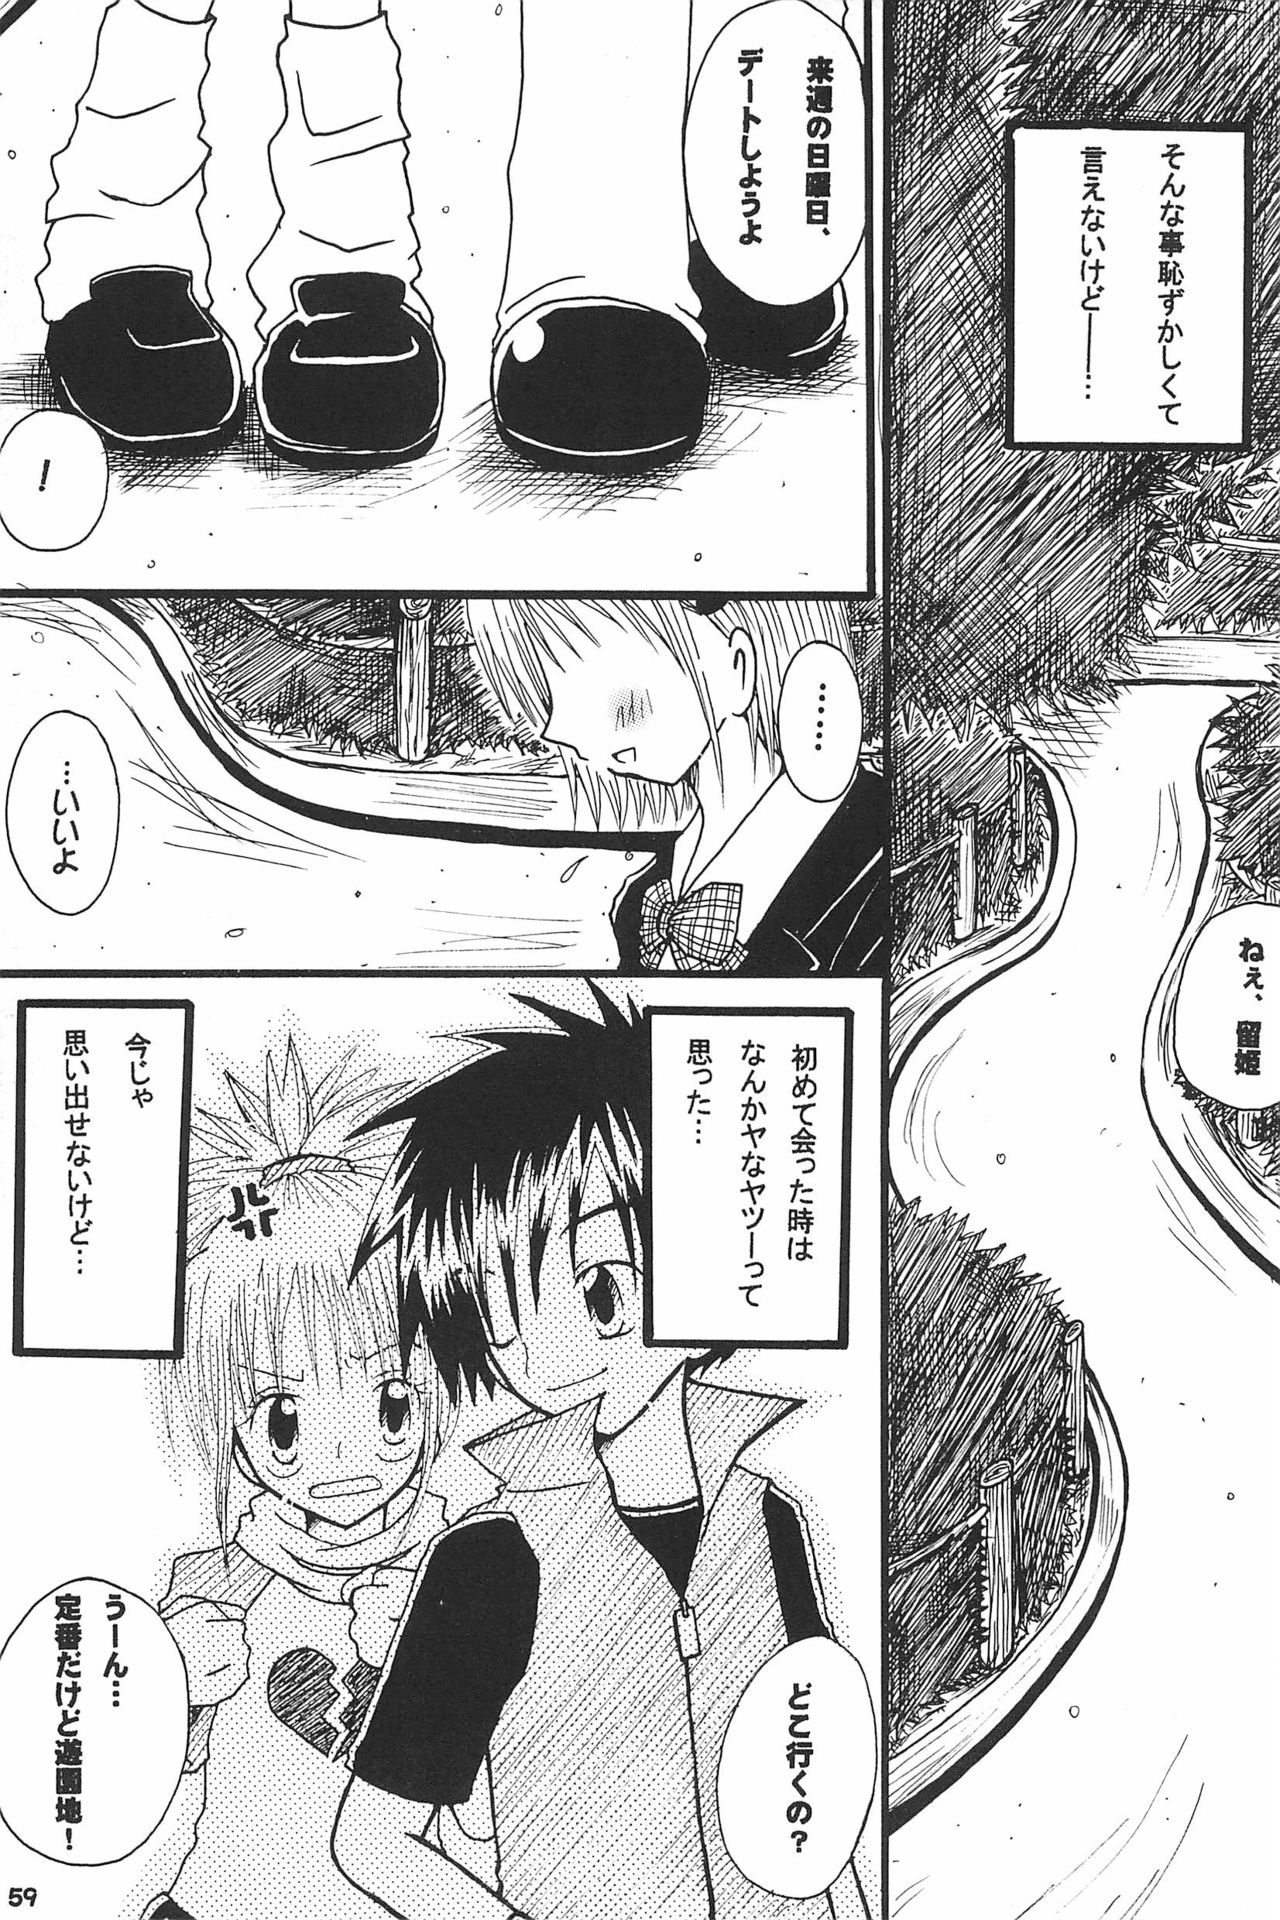 (SC15) [LeeRuki Anthology Jikkou Iinkai (Various)] LeeRuki Anthology J&R REPORT (Digimon Tamers) 60